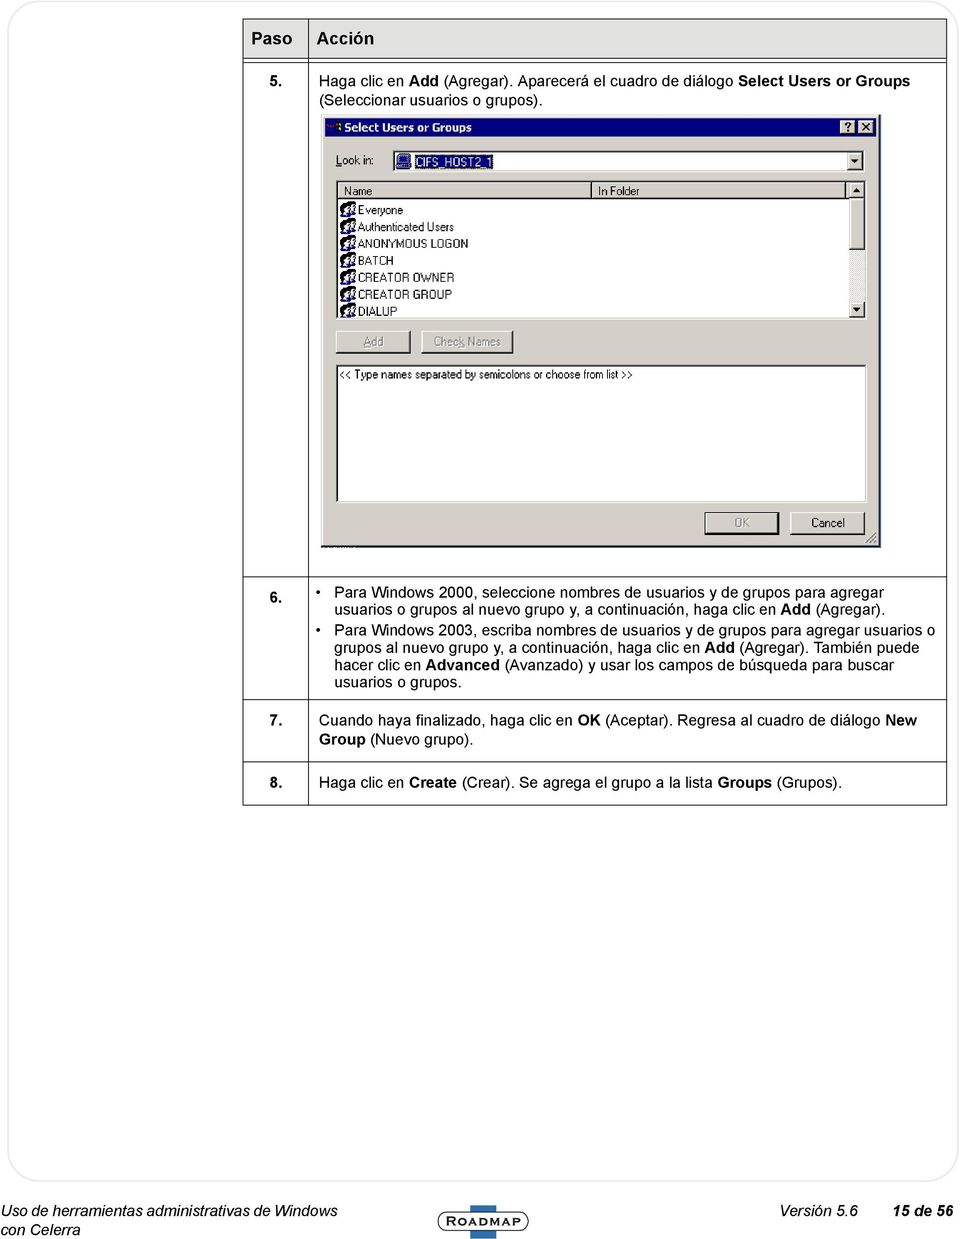 Para Windows 2003, escriba nombres de usuarios y de grupos para agregar usuarios o grupos al nuevo grupo y, a continuación, haga clic en Add (Agregar).